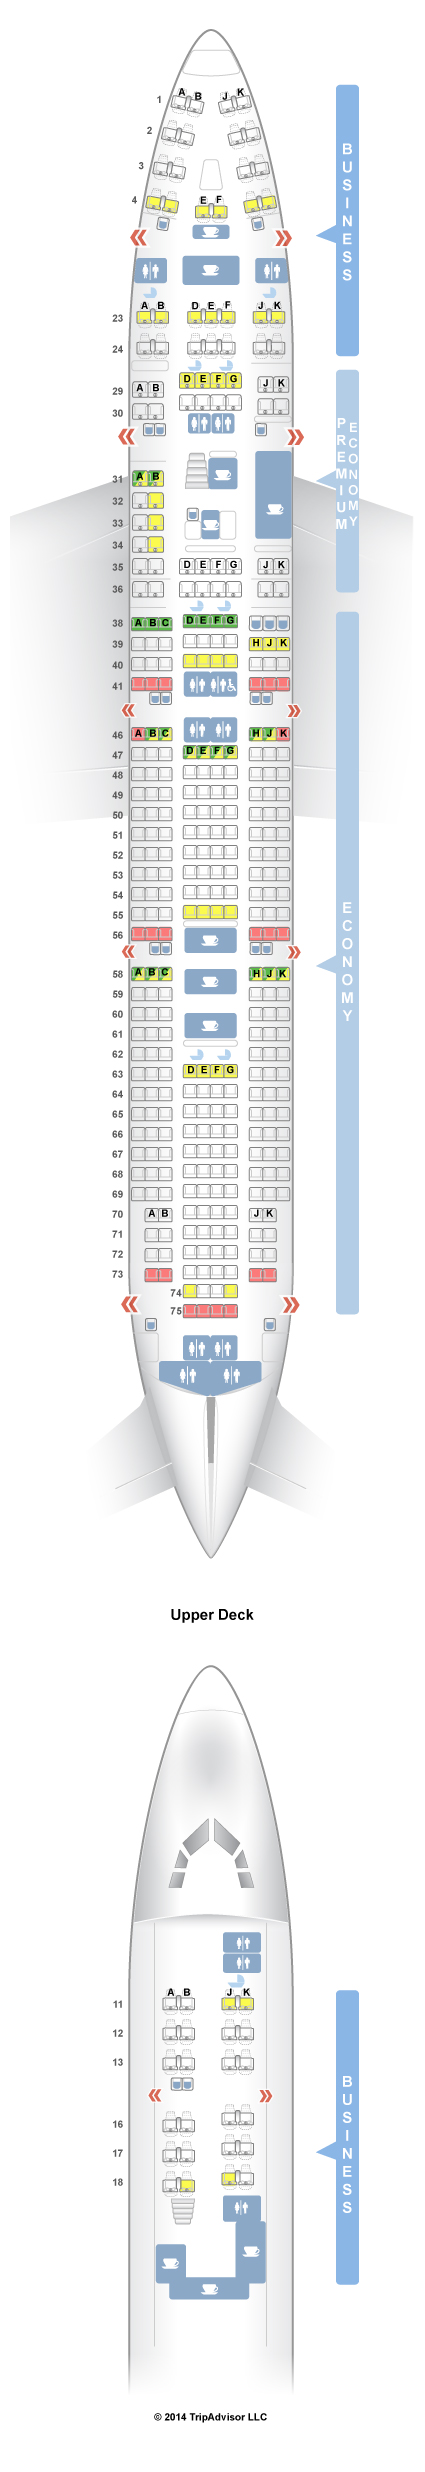 Qantas Boeing 744 Jet Seating Chart